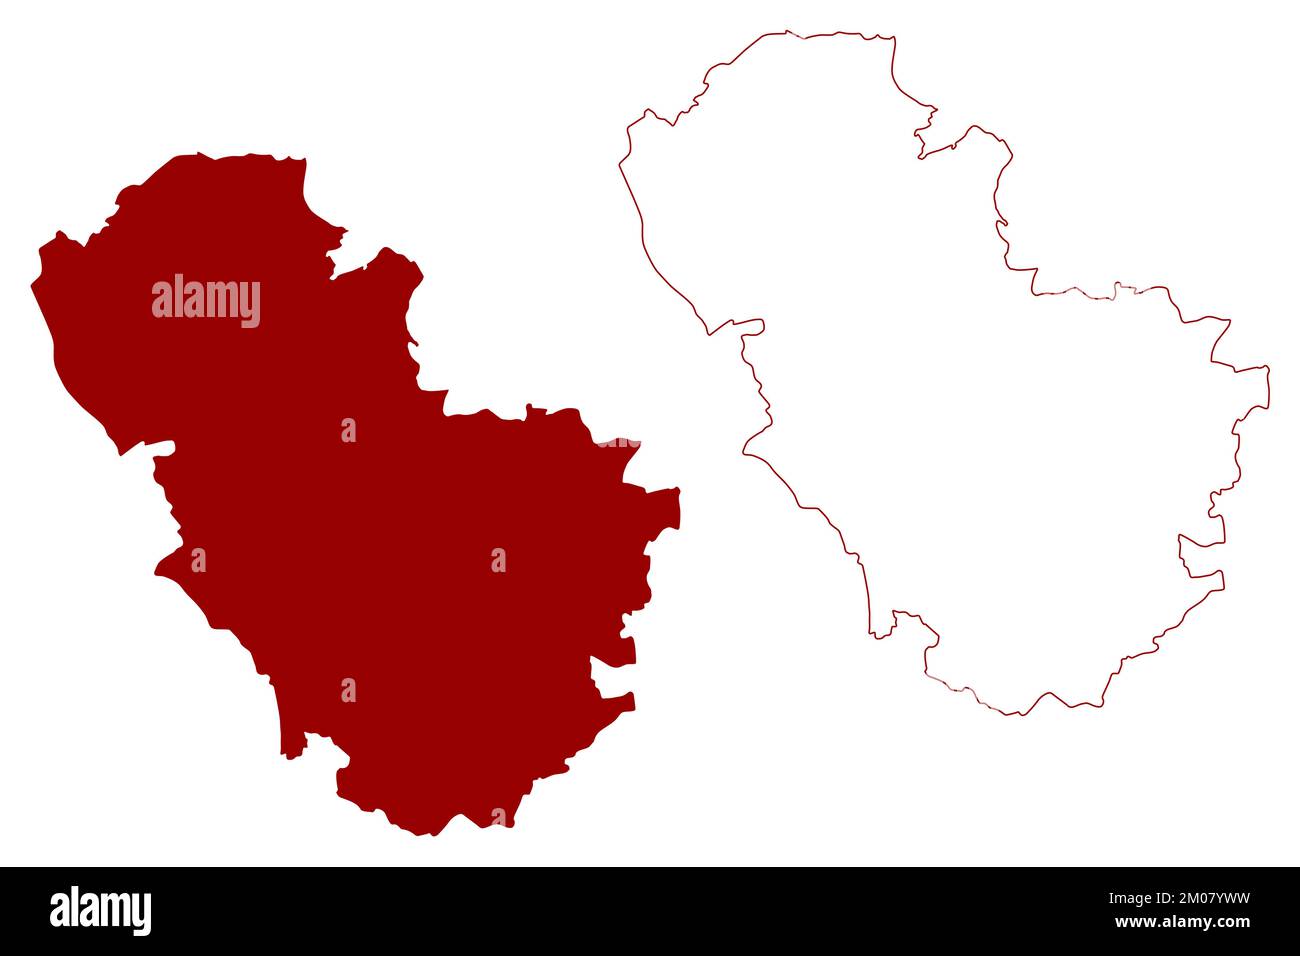 Metropolitan Borough of Rotherham (Royaume-Uni de Grande-Bretagne et d'Irlande du Nord, comté métropolitain et cérémonial du Yorkshire du Sud, Angleterre) Illustration de Vecteur